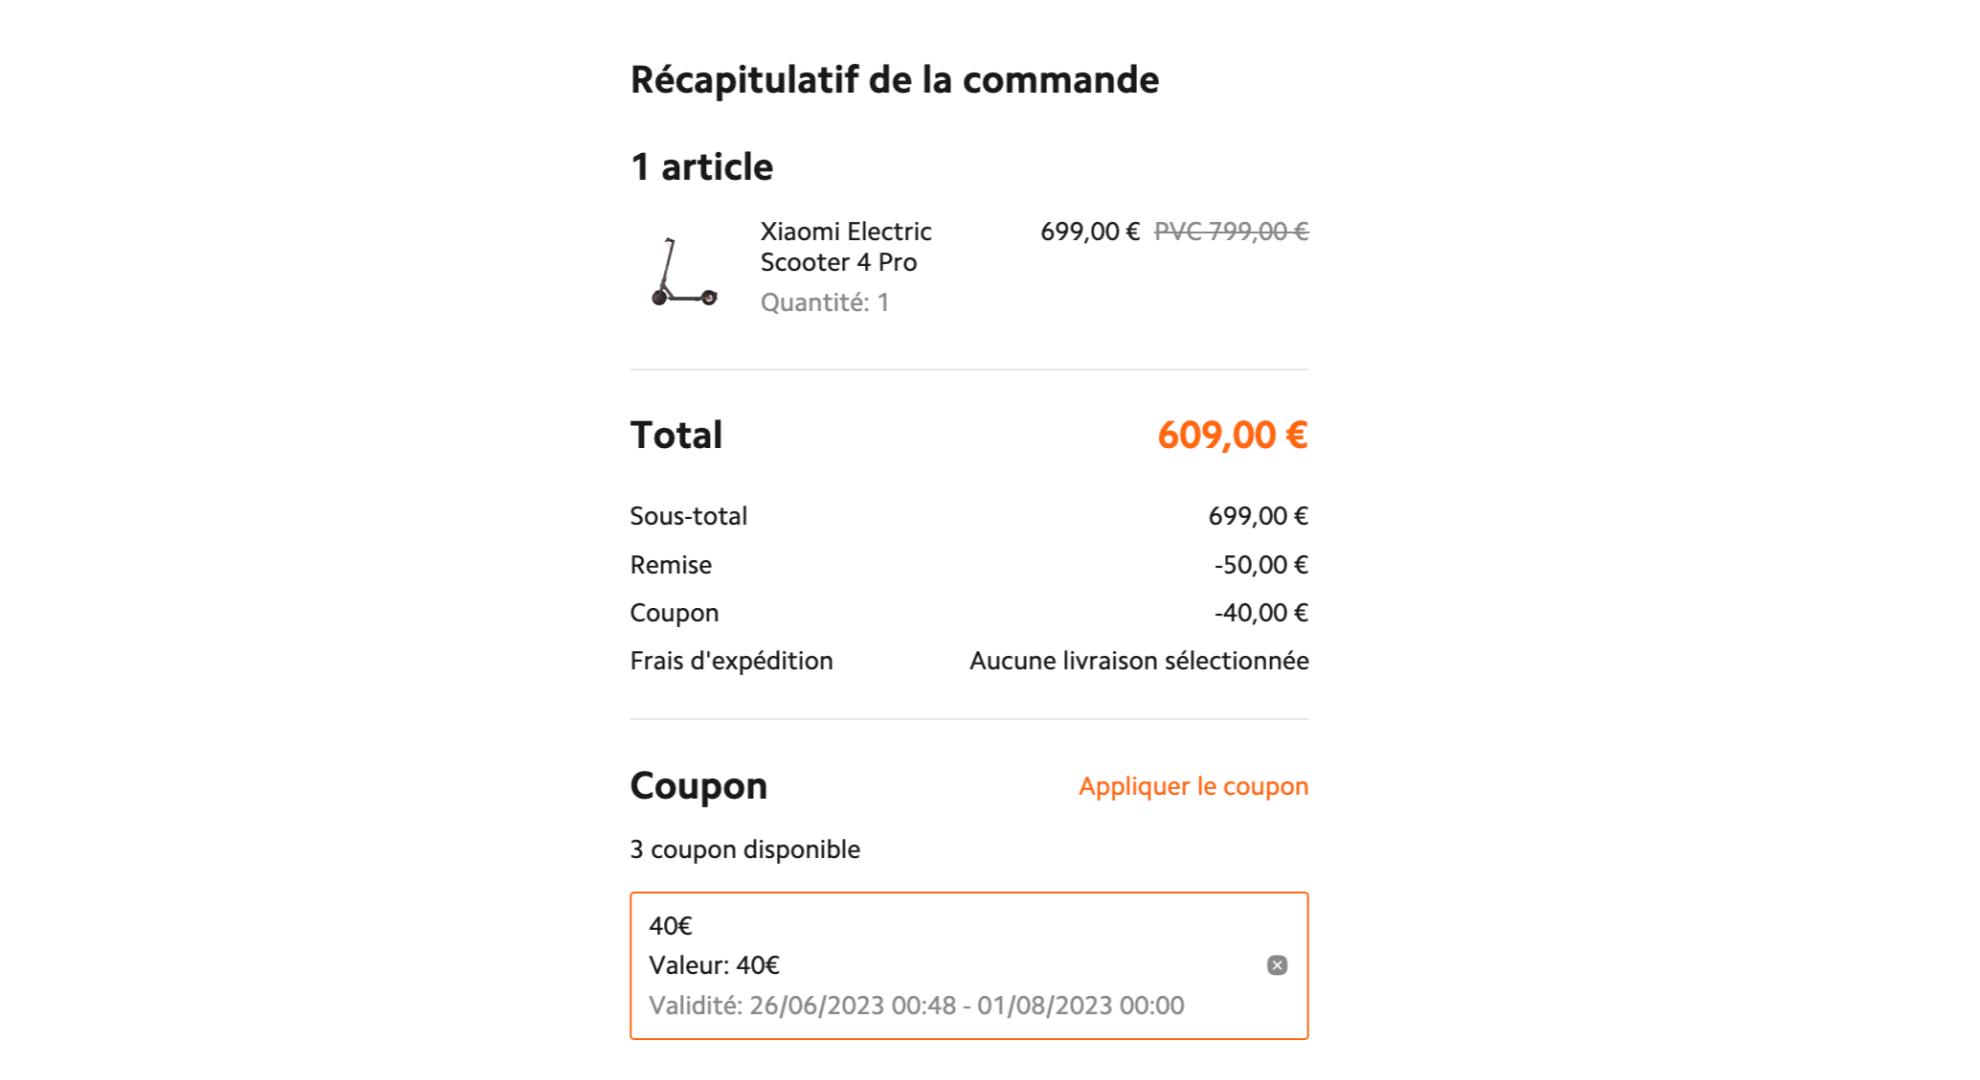 150 € de remise sur la trottinette Xiaomi Electric Scooter 4 Pro chez